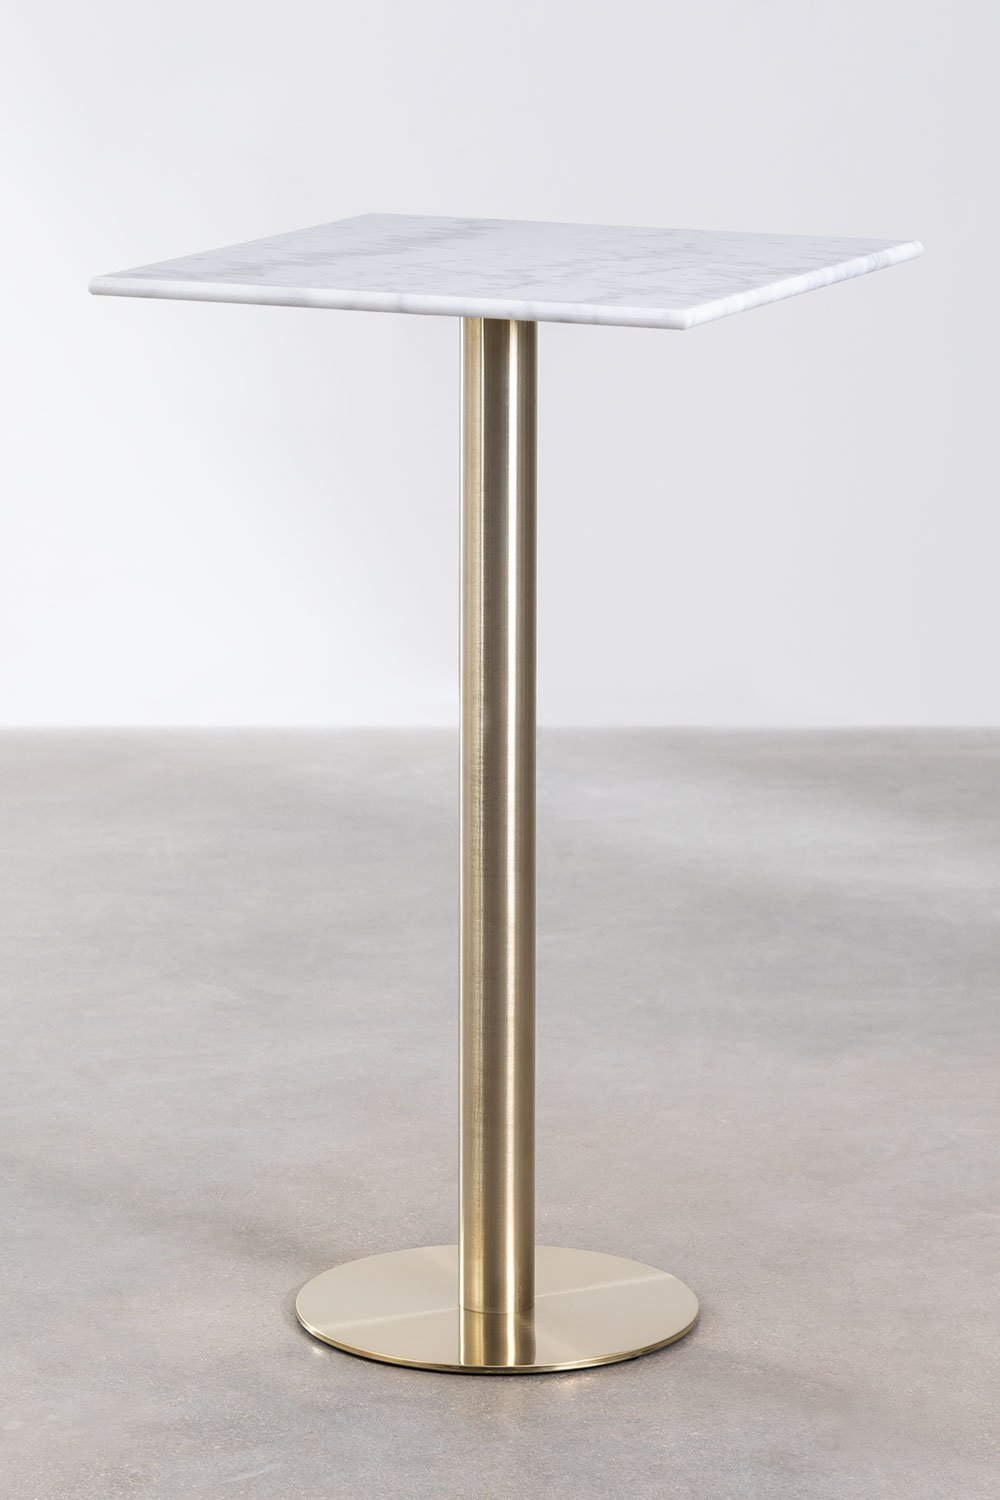 Hoge vierkante marmeren bartafel (60x60 cm) Cosmopolitan, galerij beeld 1